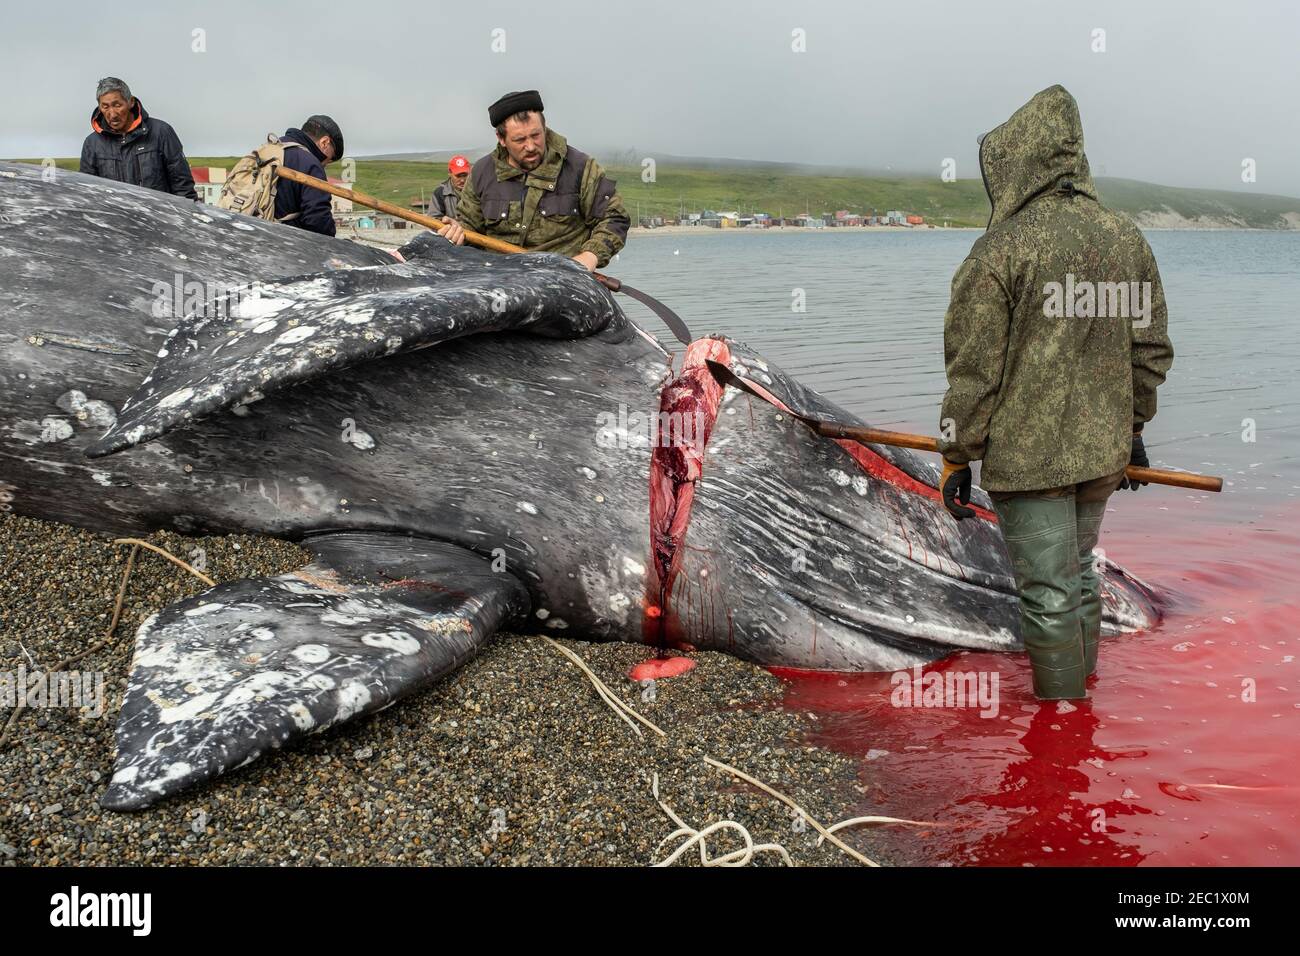 Lavrencia, région de Chukotski, Russie - 5 août 2020 : les indigènes de Chukotka ont attrapé une baleine et la coupent maintenant en morceaux. Banque D'Images